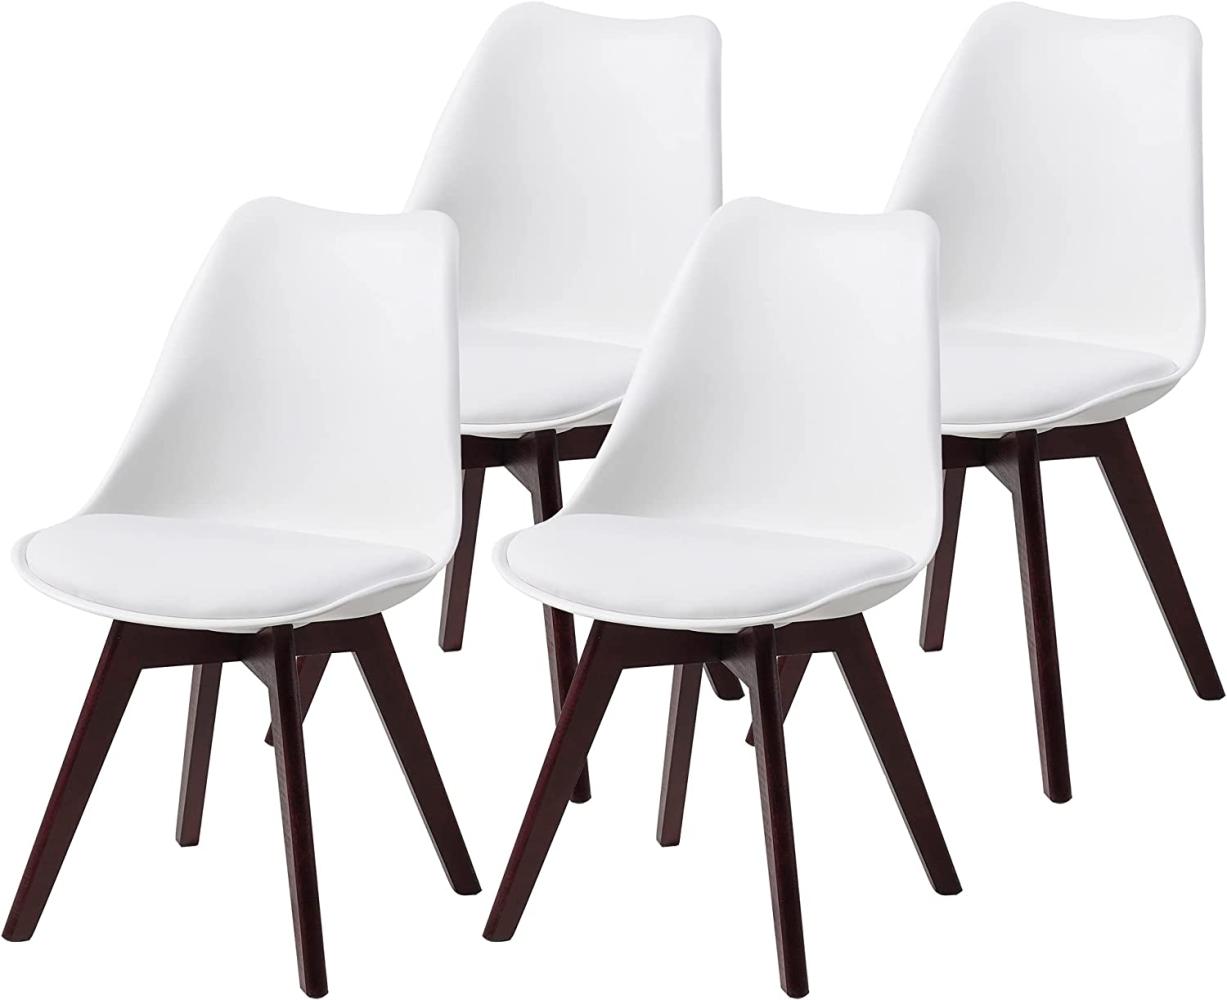 ALBATROS Esszimmerstühle AARHUS 4-er Set, Weiss mit Beinen aus Massiv-Holz, Nussbaum, skandinavisches Retro-Design Bild 1